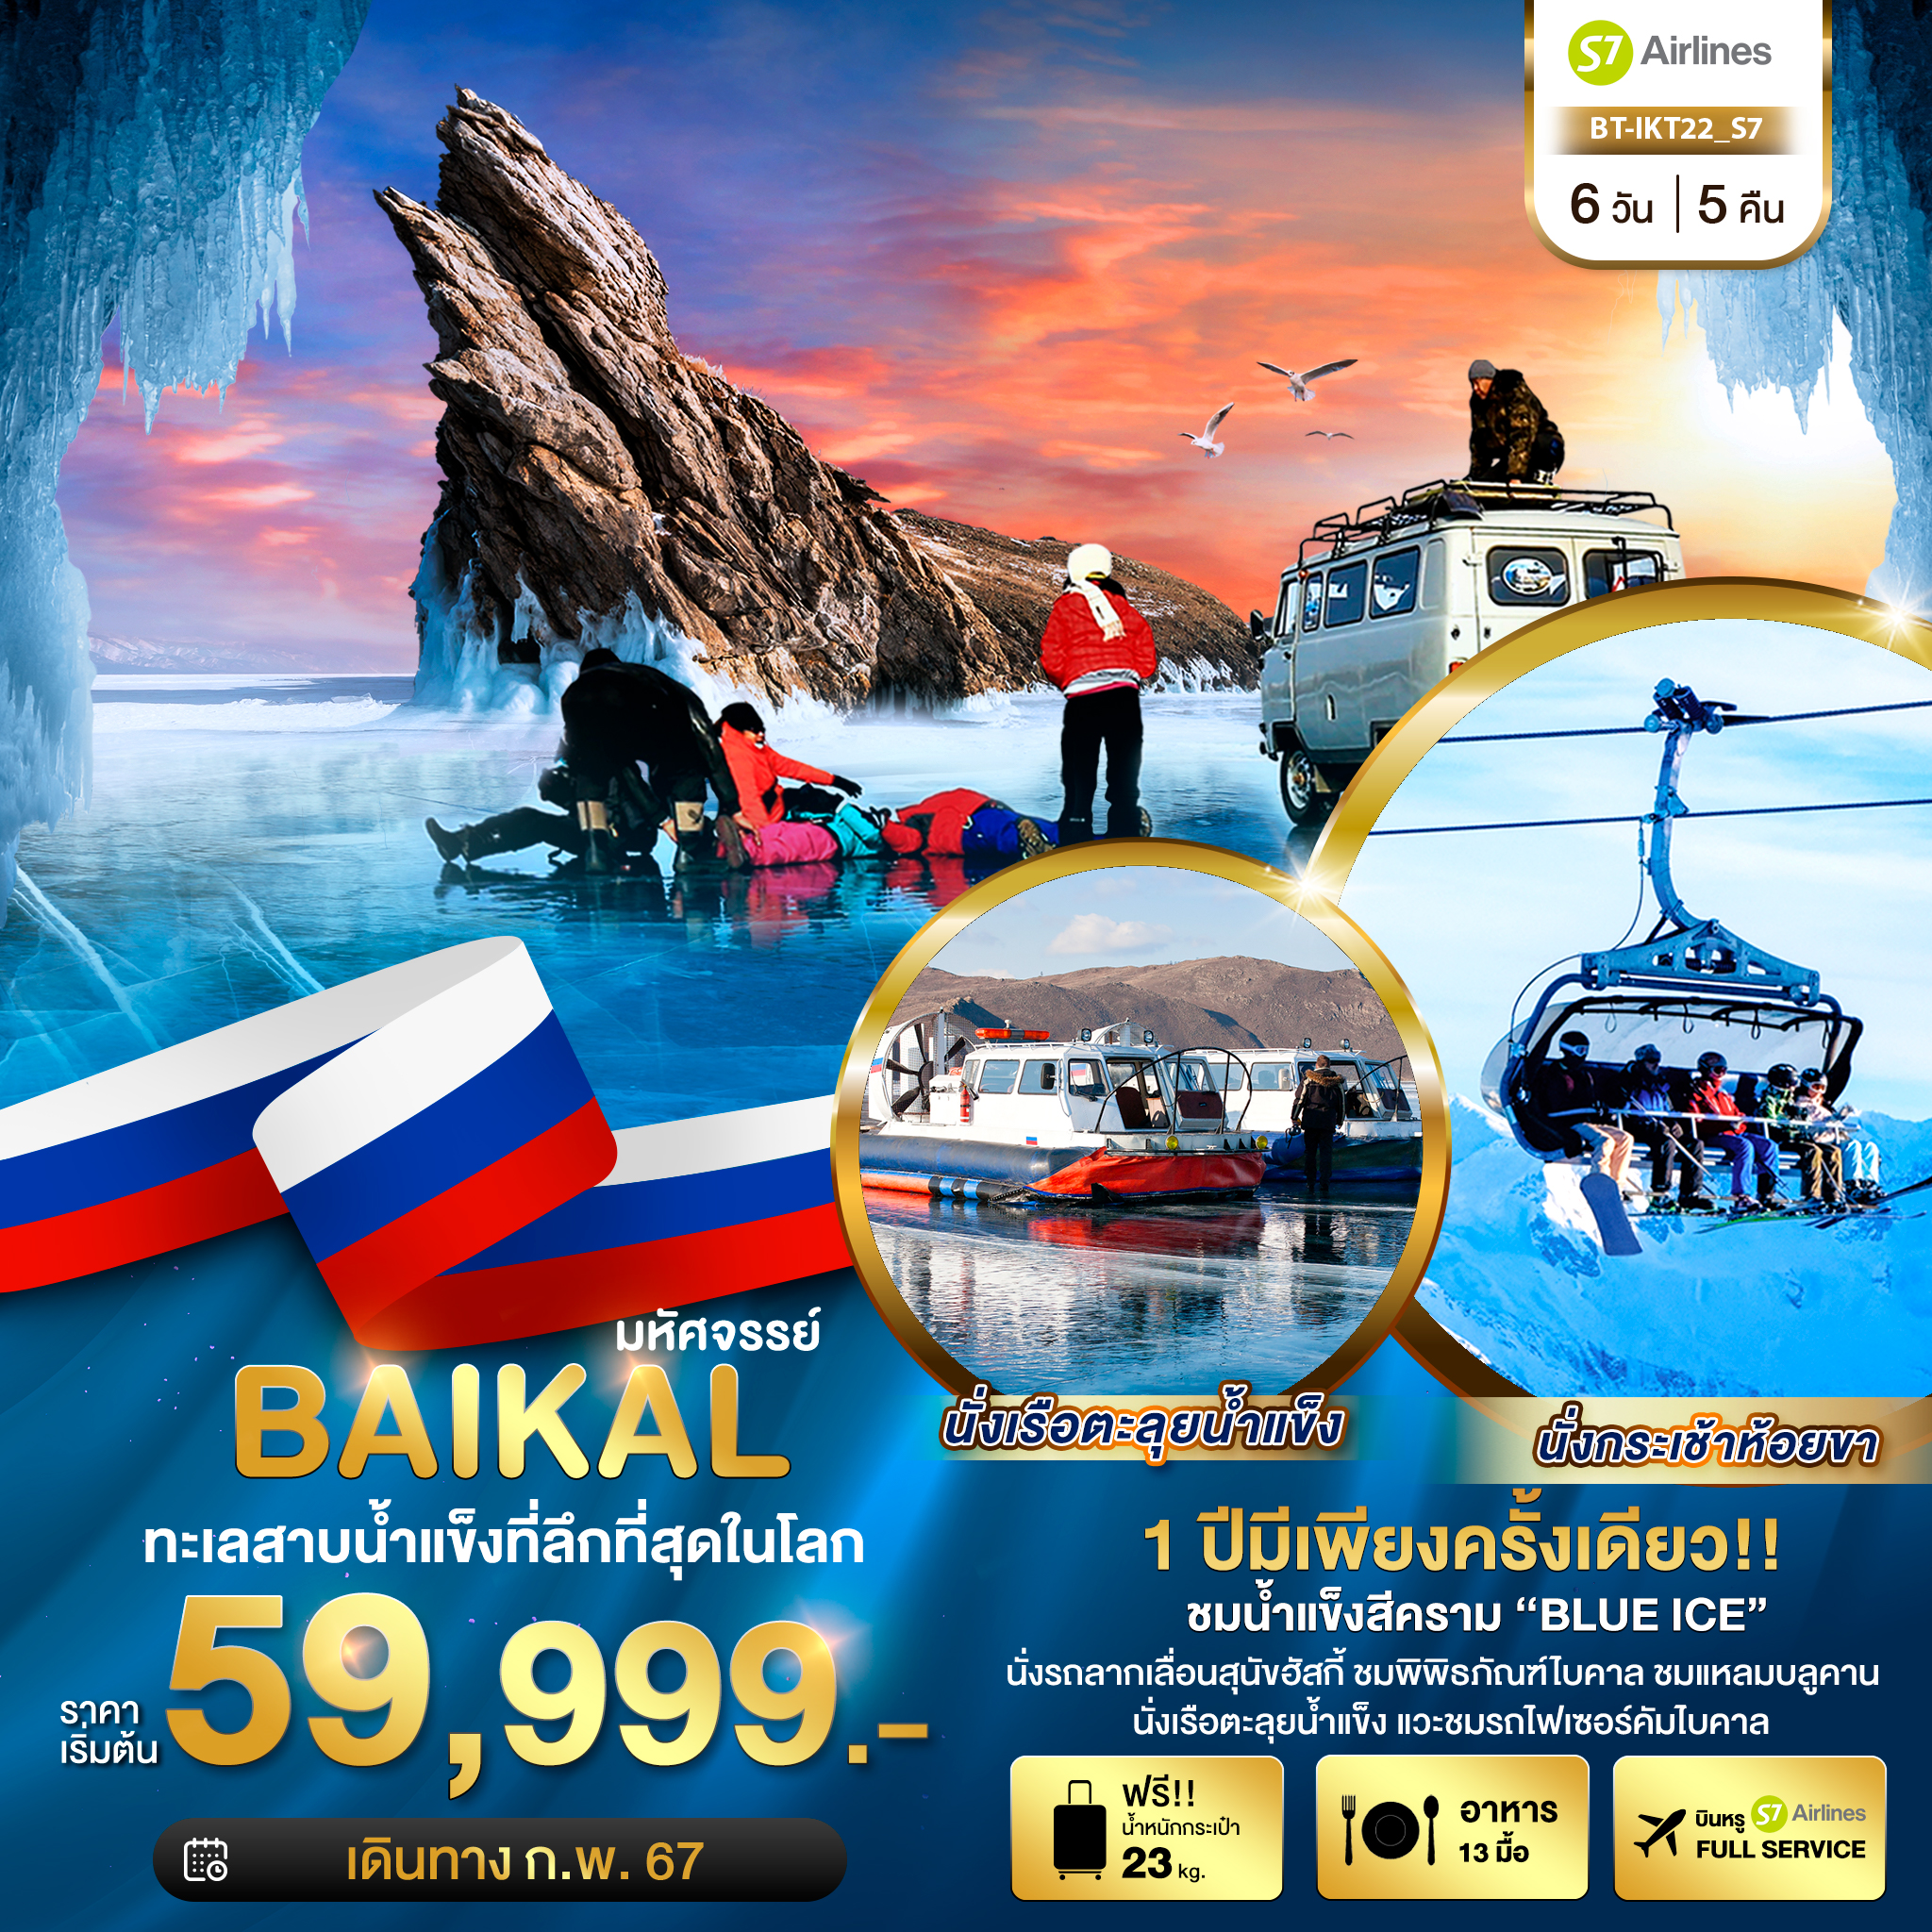 RUSSIA BAIKAL ทะเลสาบน้ำแข็งที่ลึกที่สุดในโลก 6 วัน 5 คืน เดินทาง ก.พ.-มี.ค.67 เริ่มต้น 59,999.- S7 Airlines (S7)